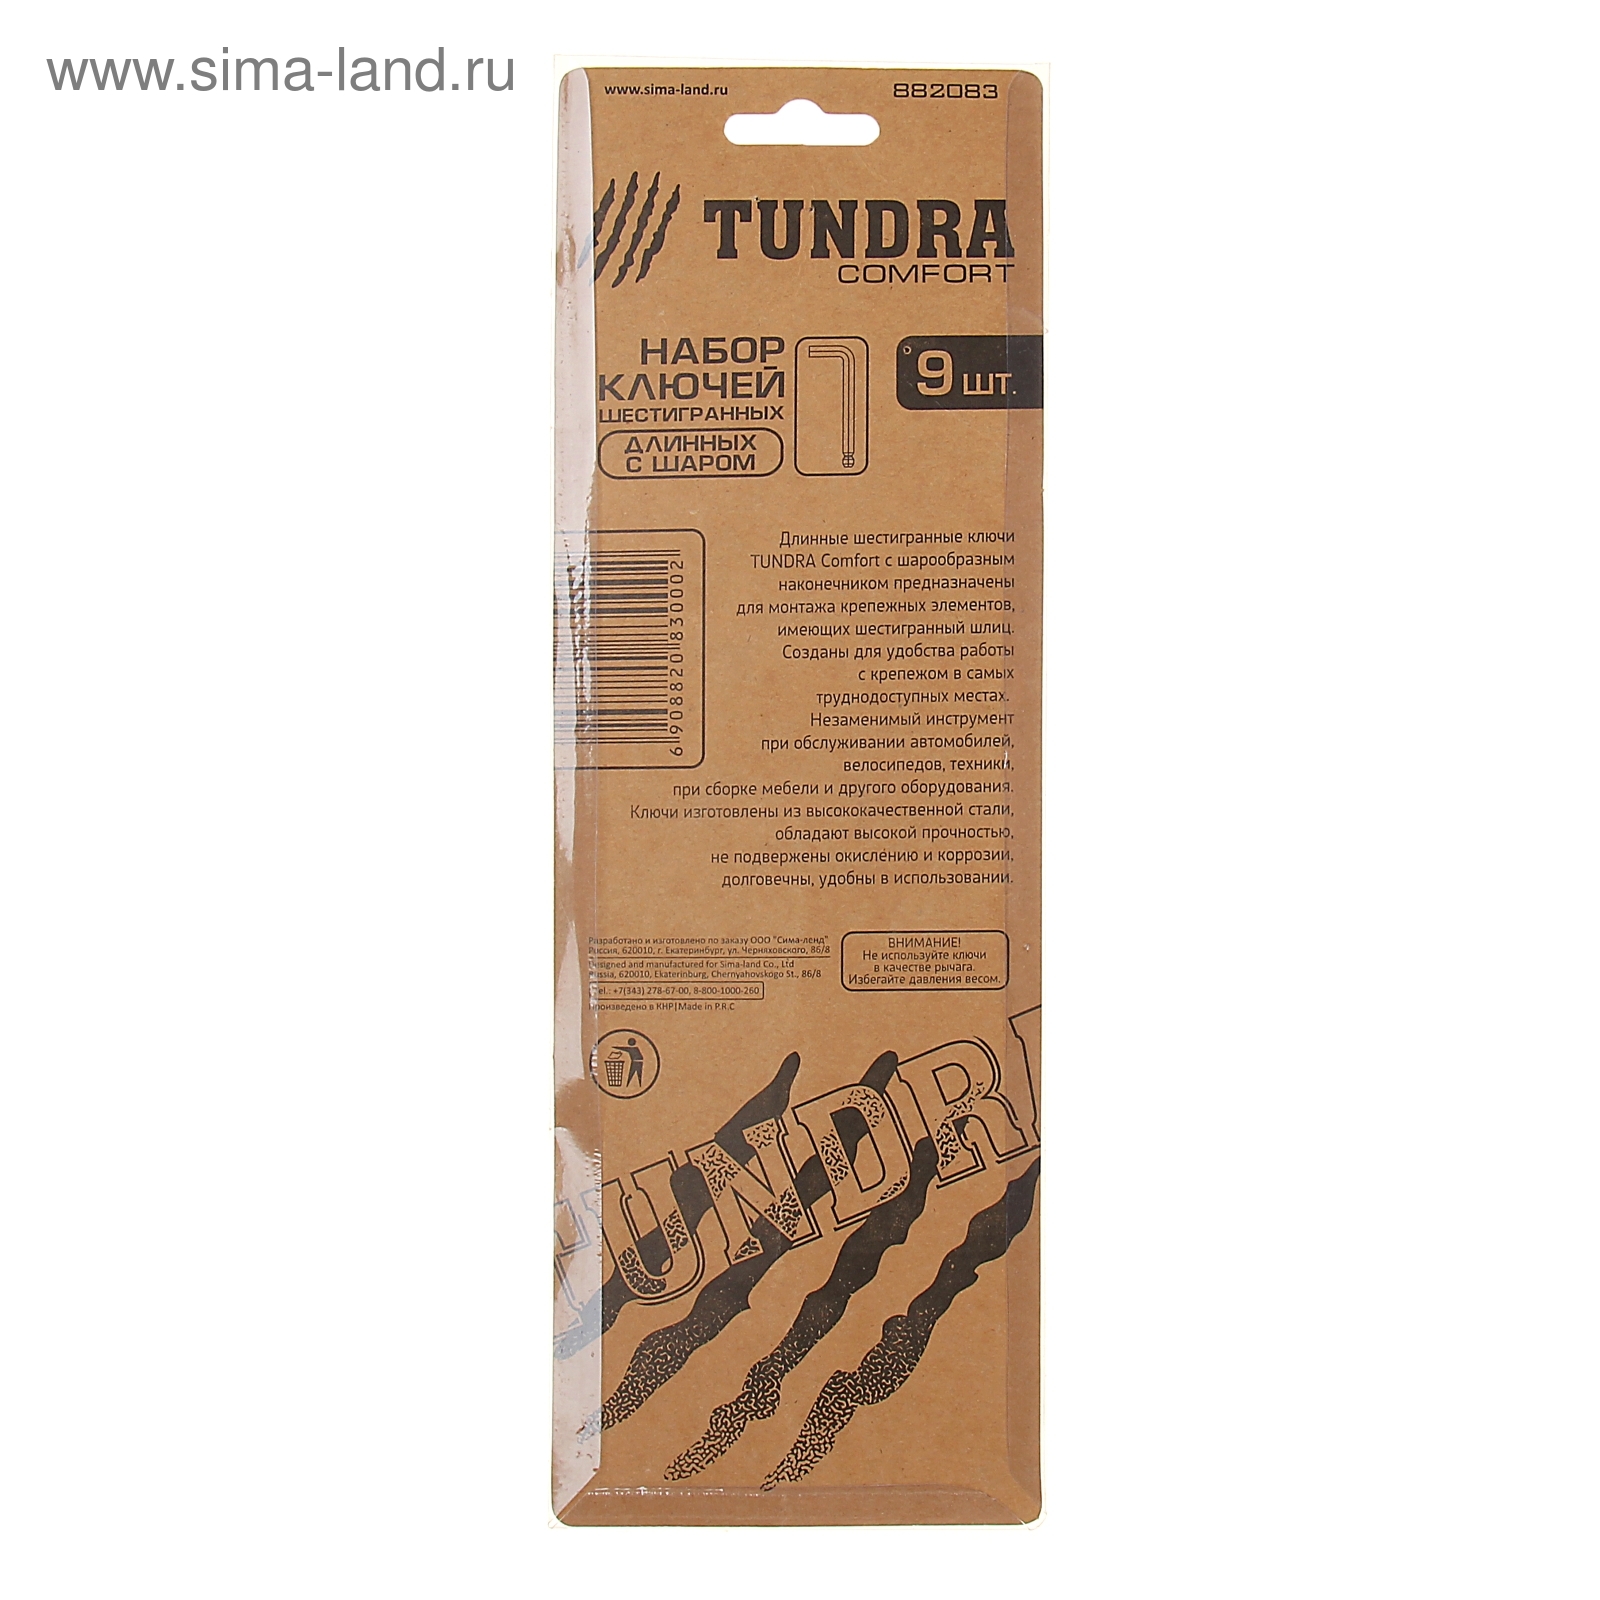 Набор ключей шестигранников TUNDRA comfort, 1.5 - 10 мм 9 штук, с шаром длинные